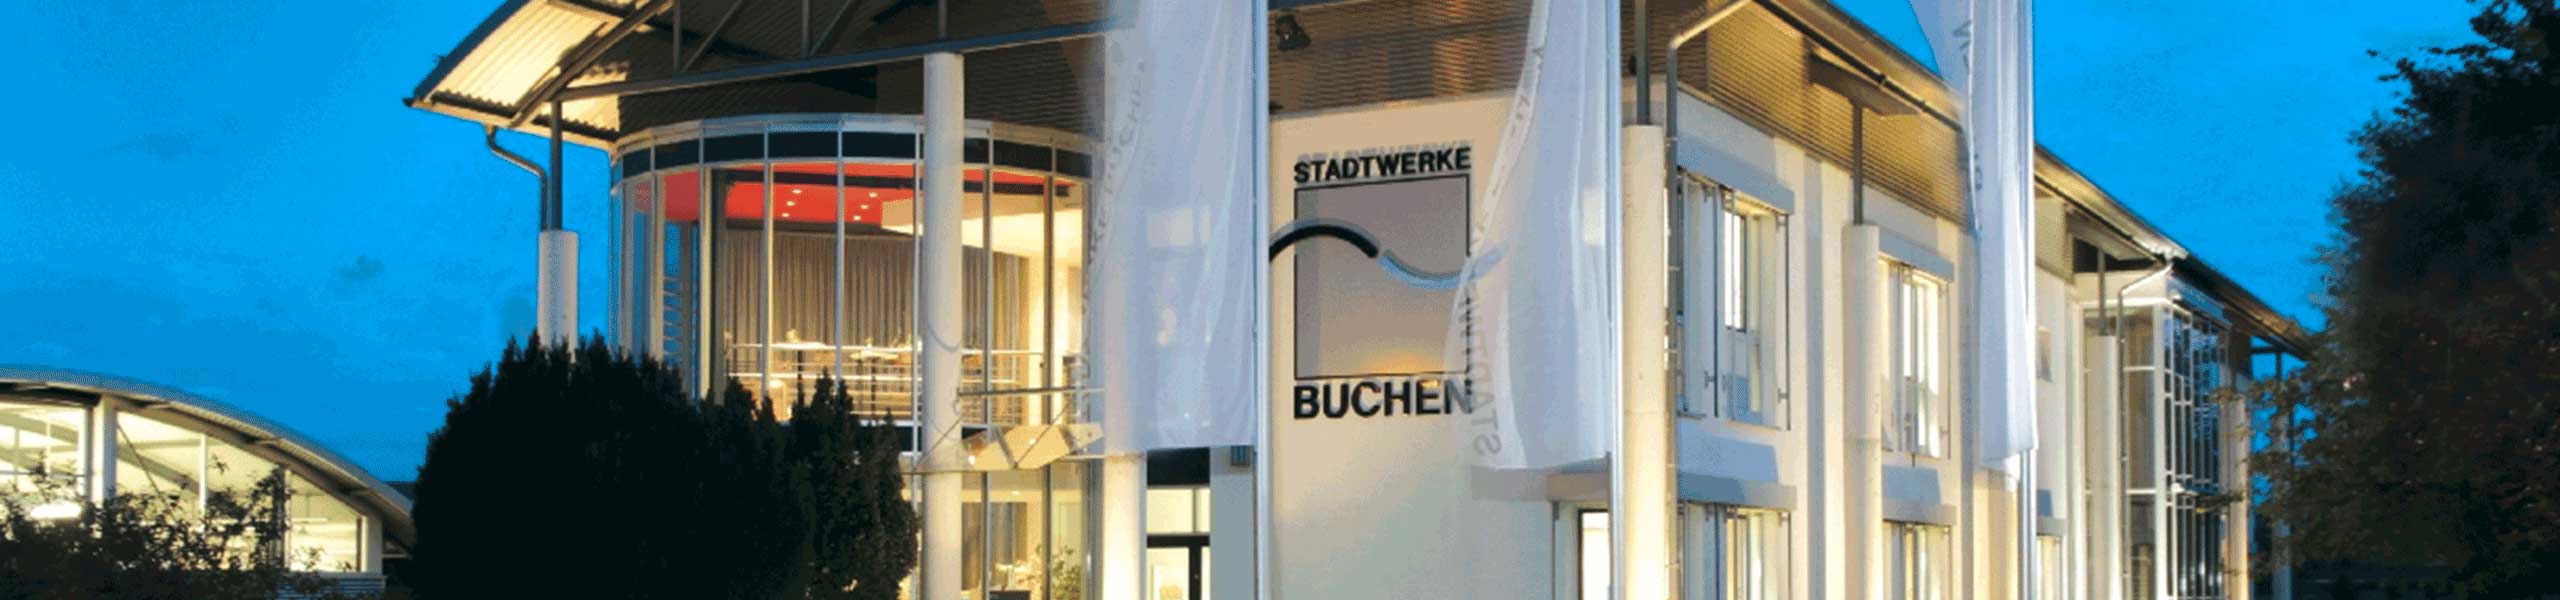 Stadtwerke Buchen GmbH & Co KG - Wärme aus der Umwelt